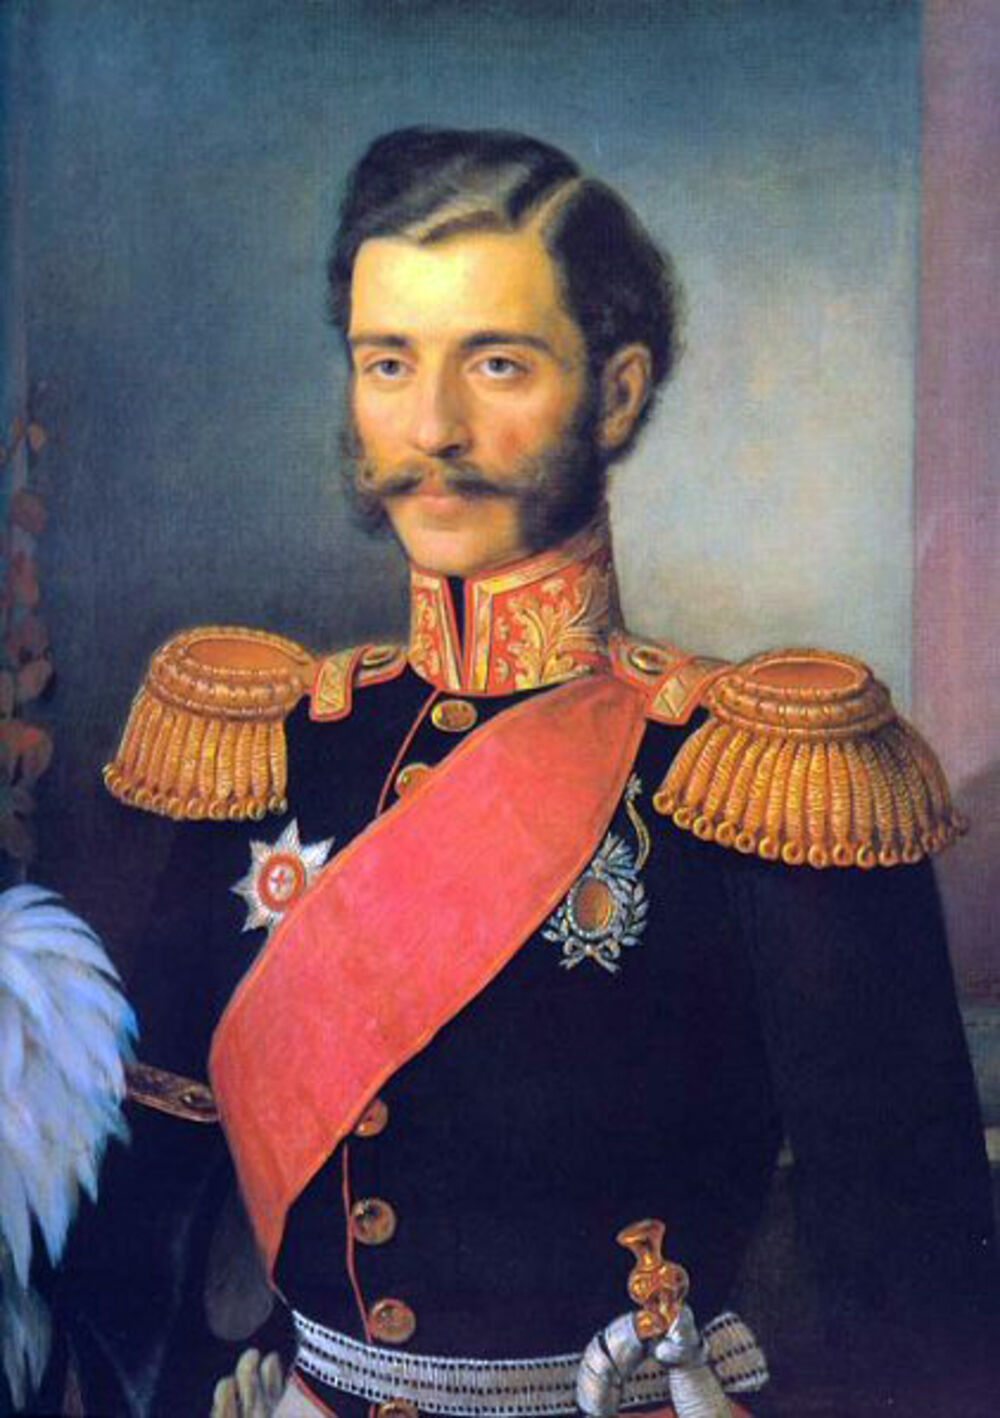 Bogićević je zajedno sa knez Mihailom prebegao na teritoriju Austrijskog carstva